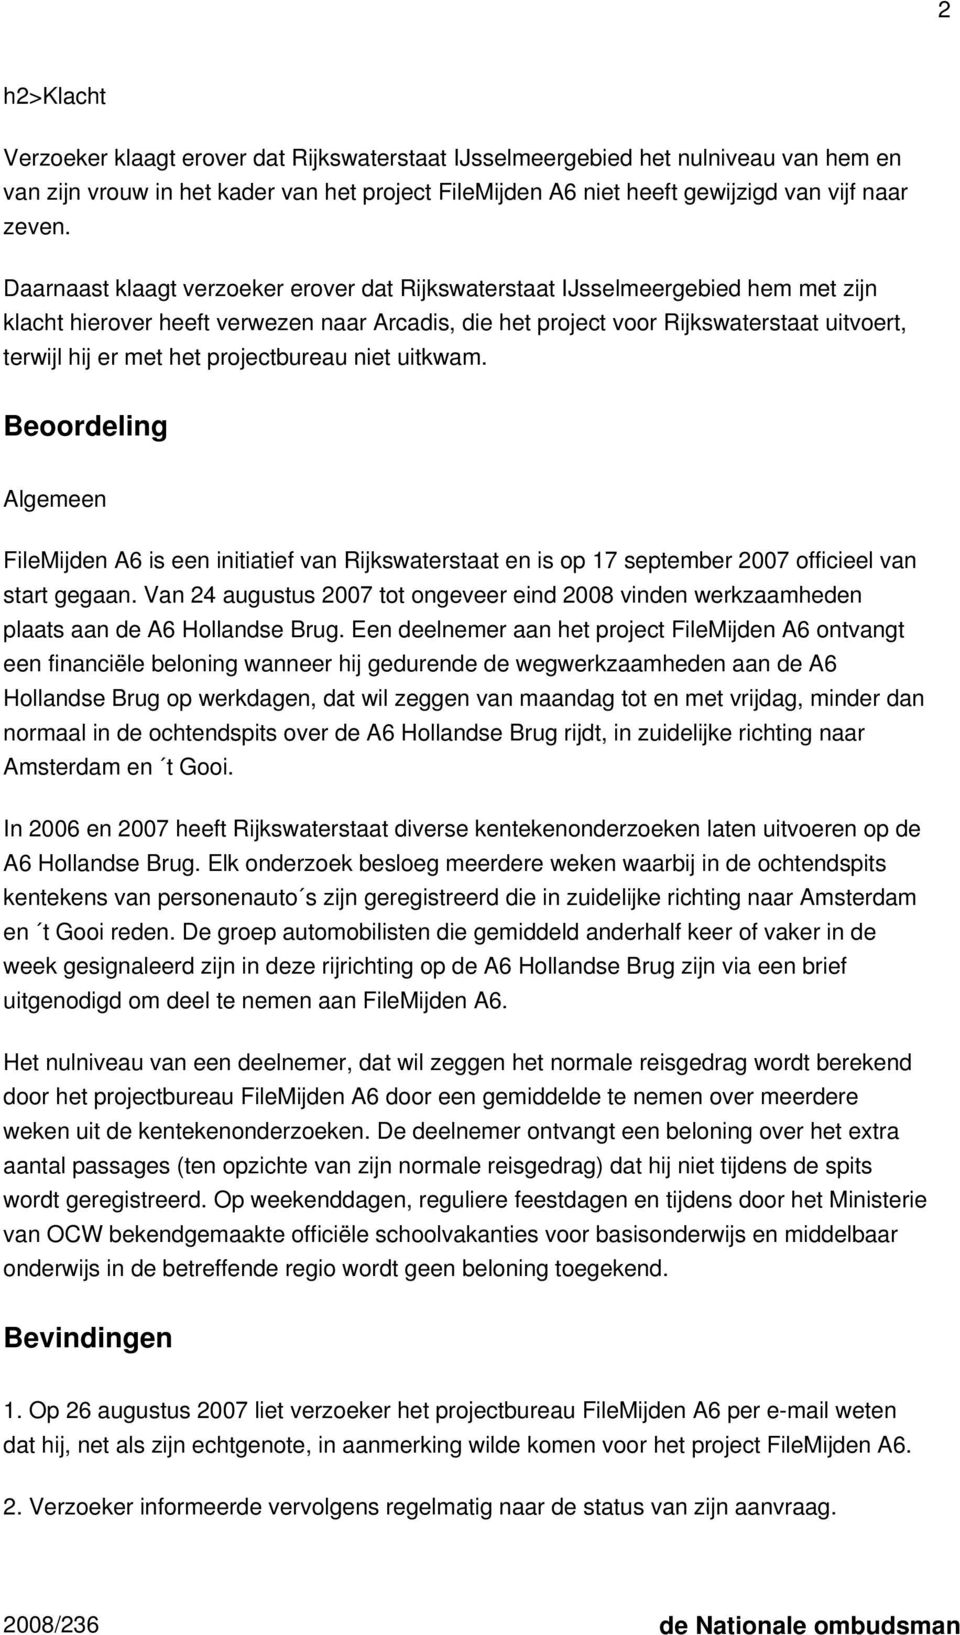 projectbureau niet uitkwam. Beoordeling Algemeen FileMijden A6 is een initiatief van Rijkswaterstaat en is op 17 september 2007 officieel van start gegaan.